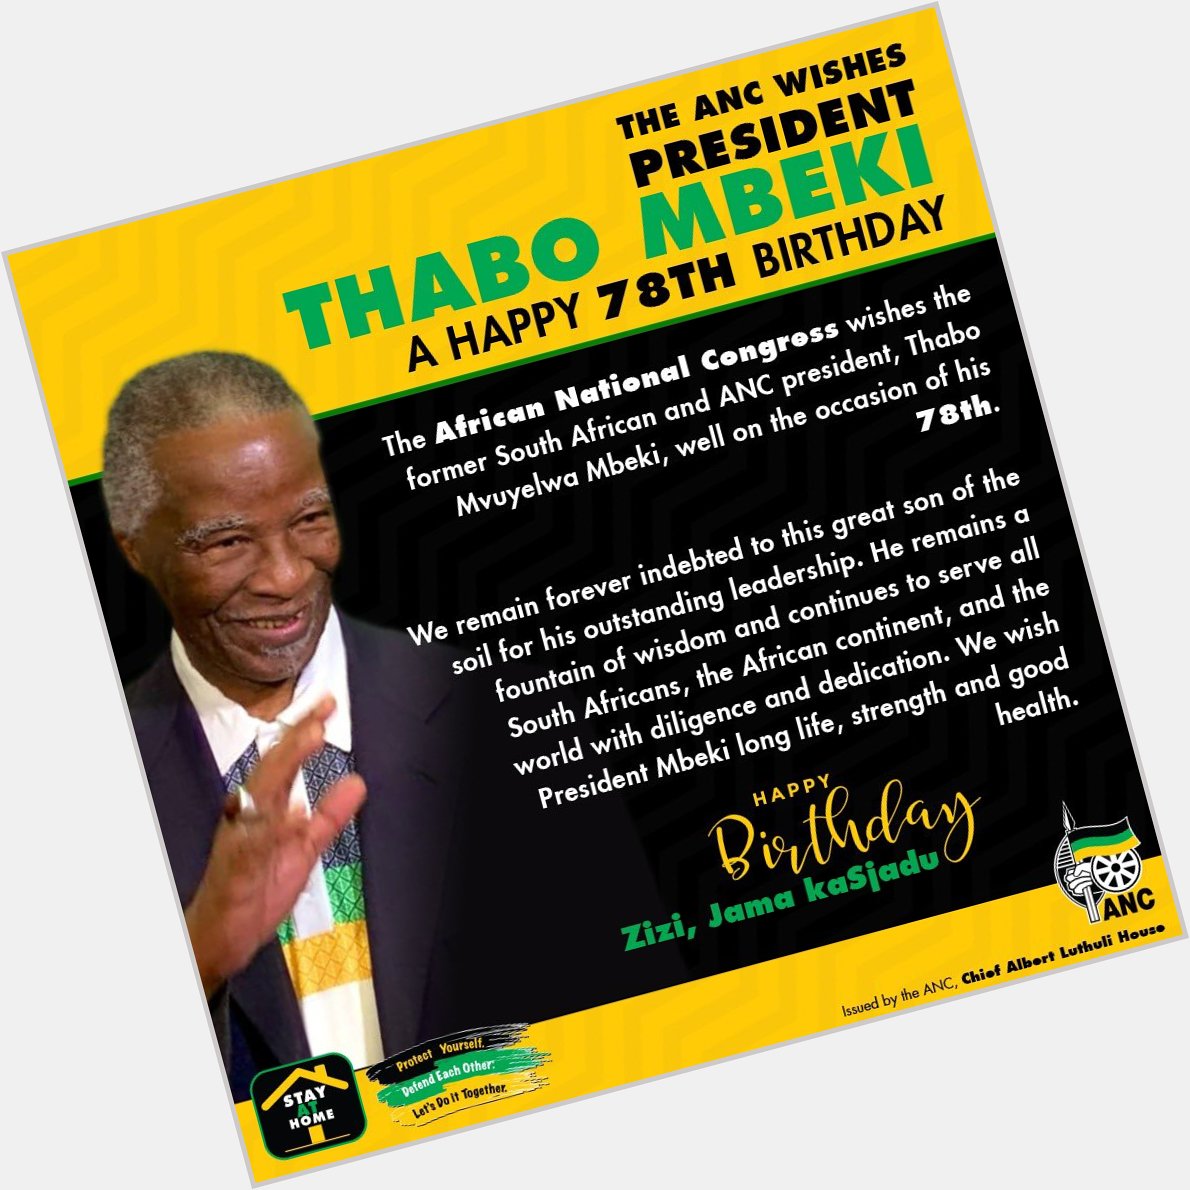  wishes President Thabo Mbeki a Happy 78th Birthday.  